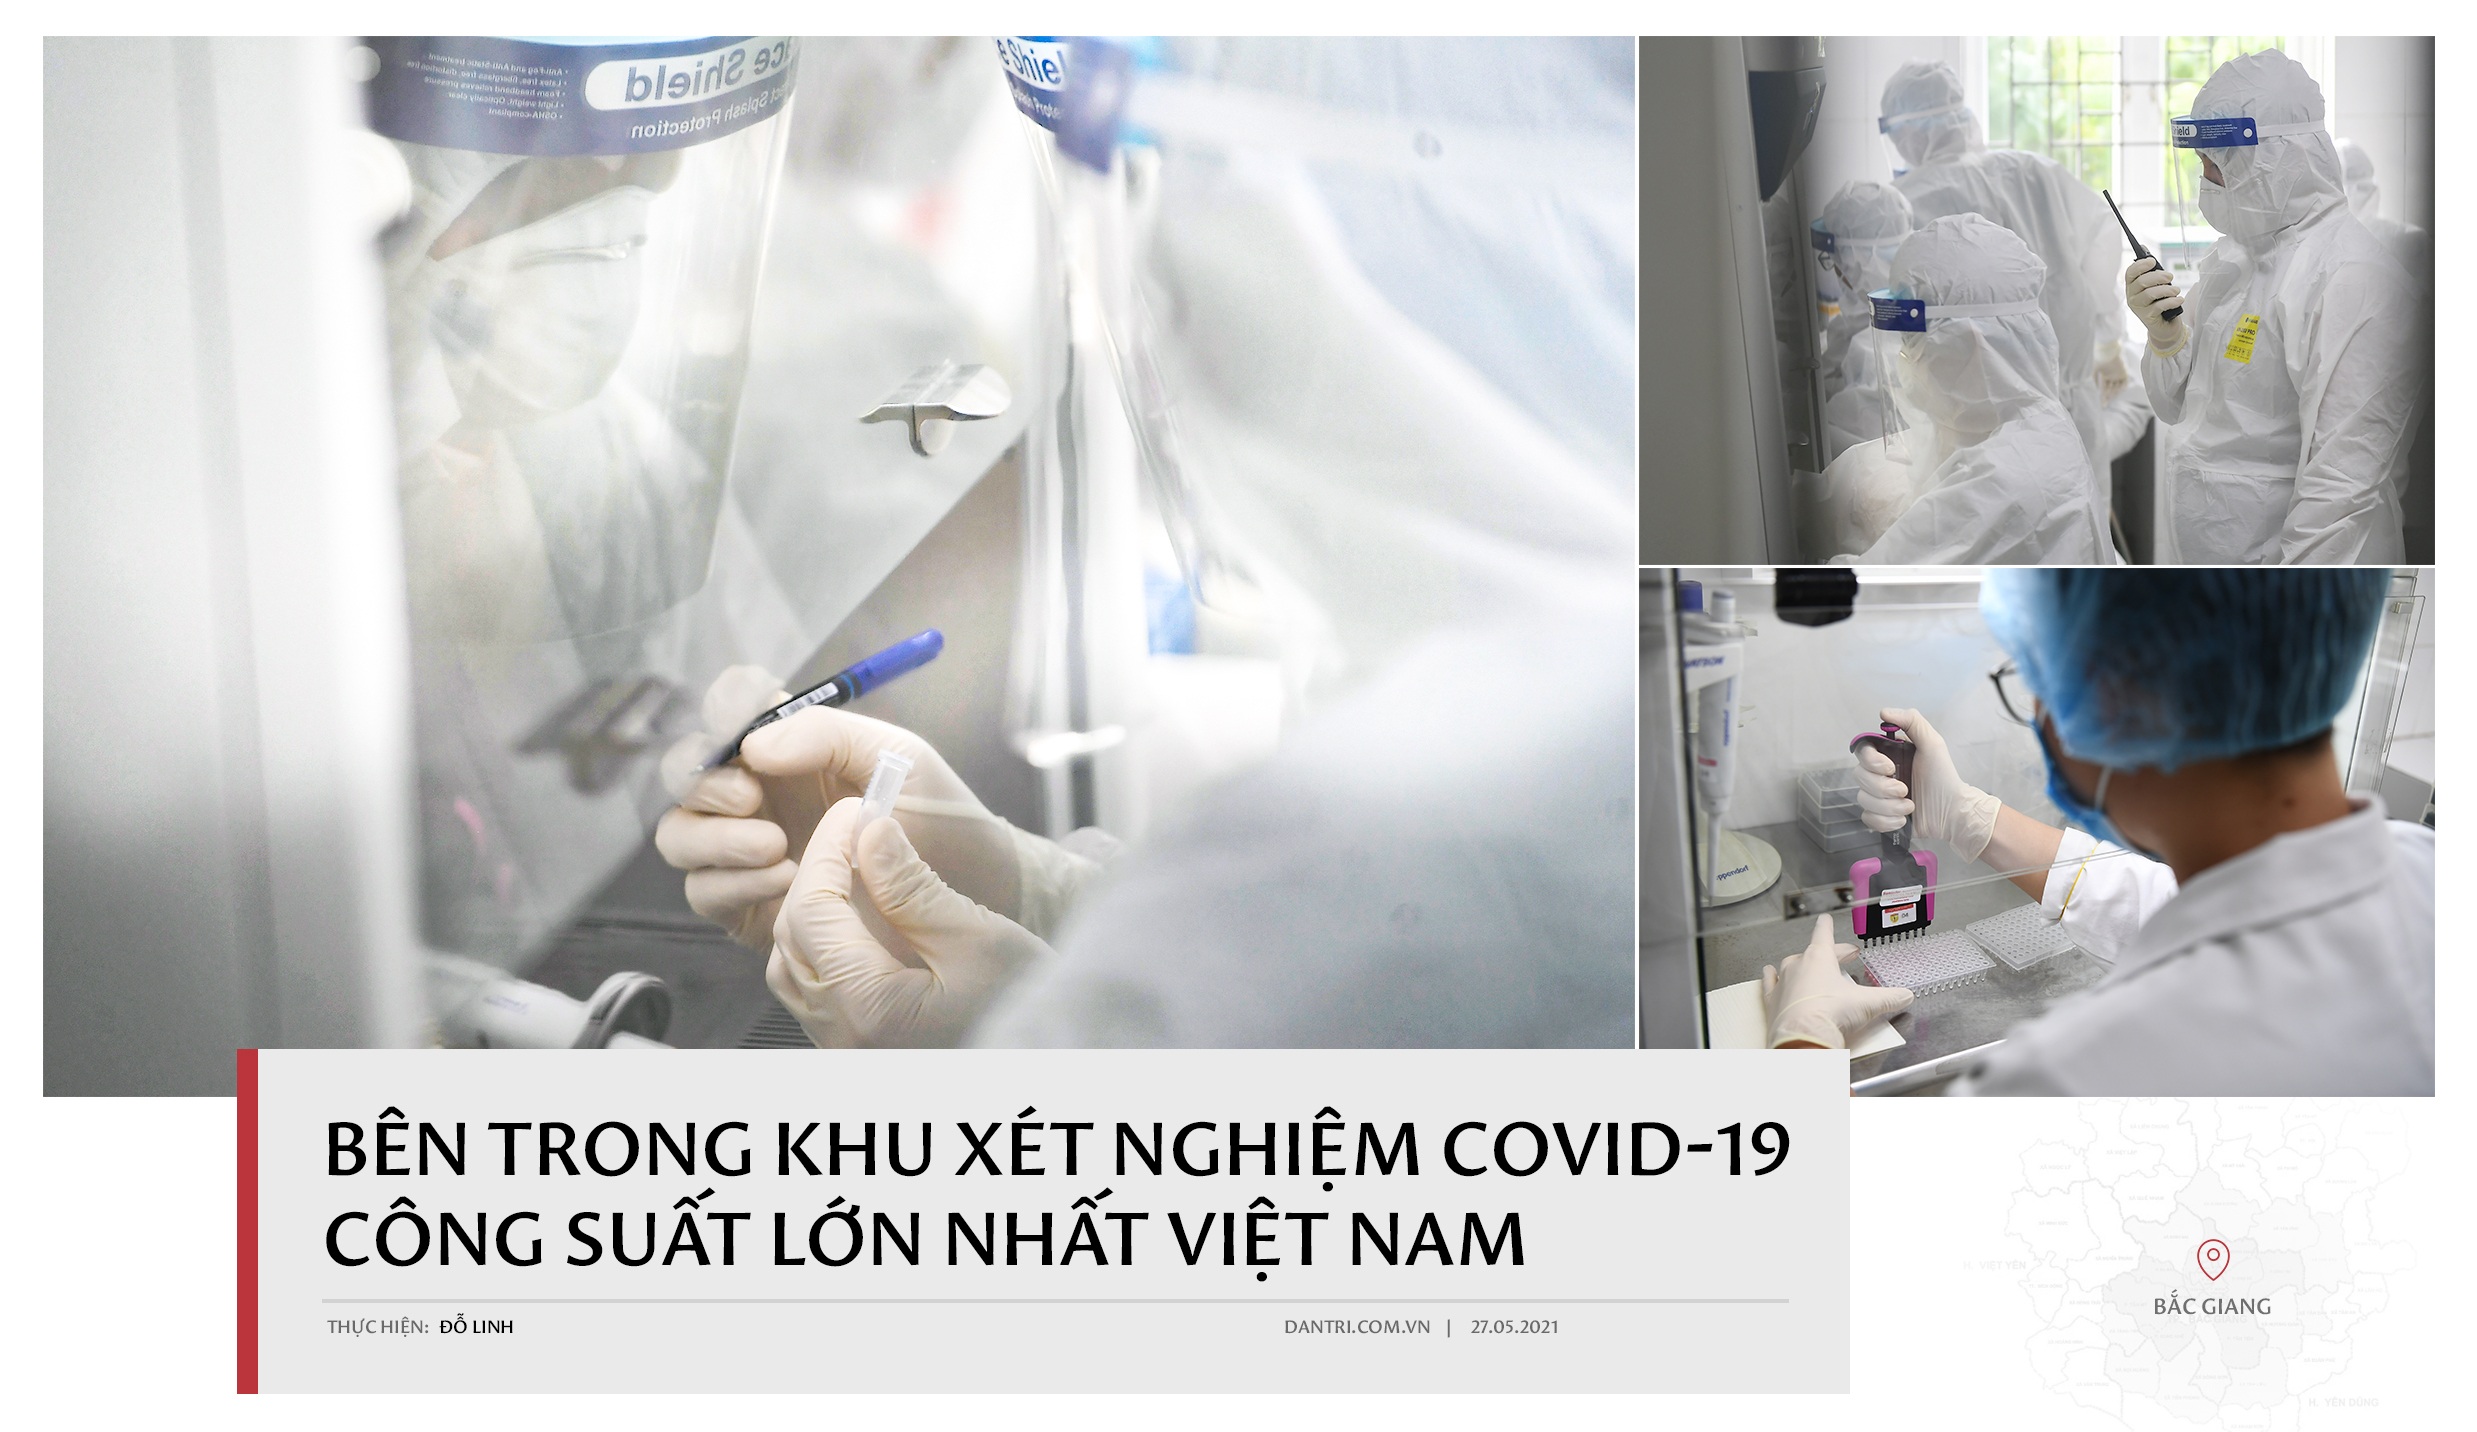 Cận cảnh khu xét nghiệm lớn nhất Việt Nam, cao điểm xử lý 20.000 mẫu/ngày